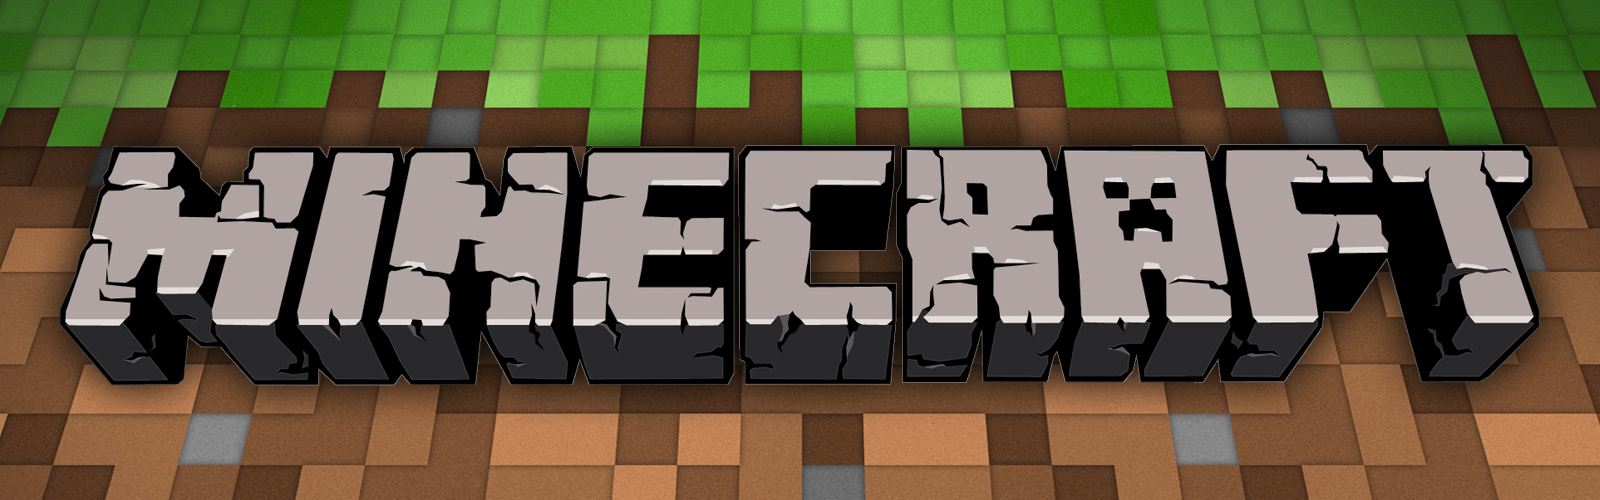 Minecraft produkty - Geek Planet